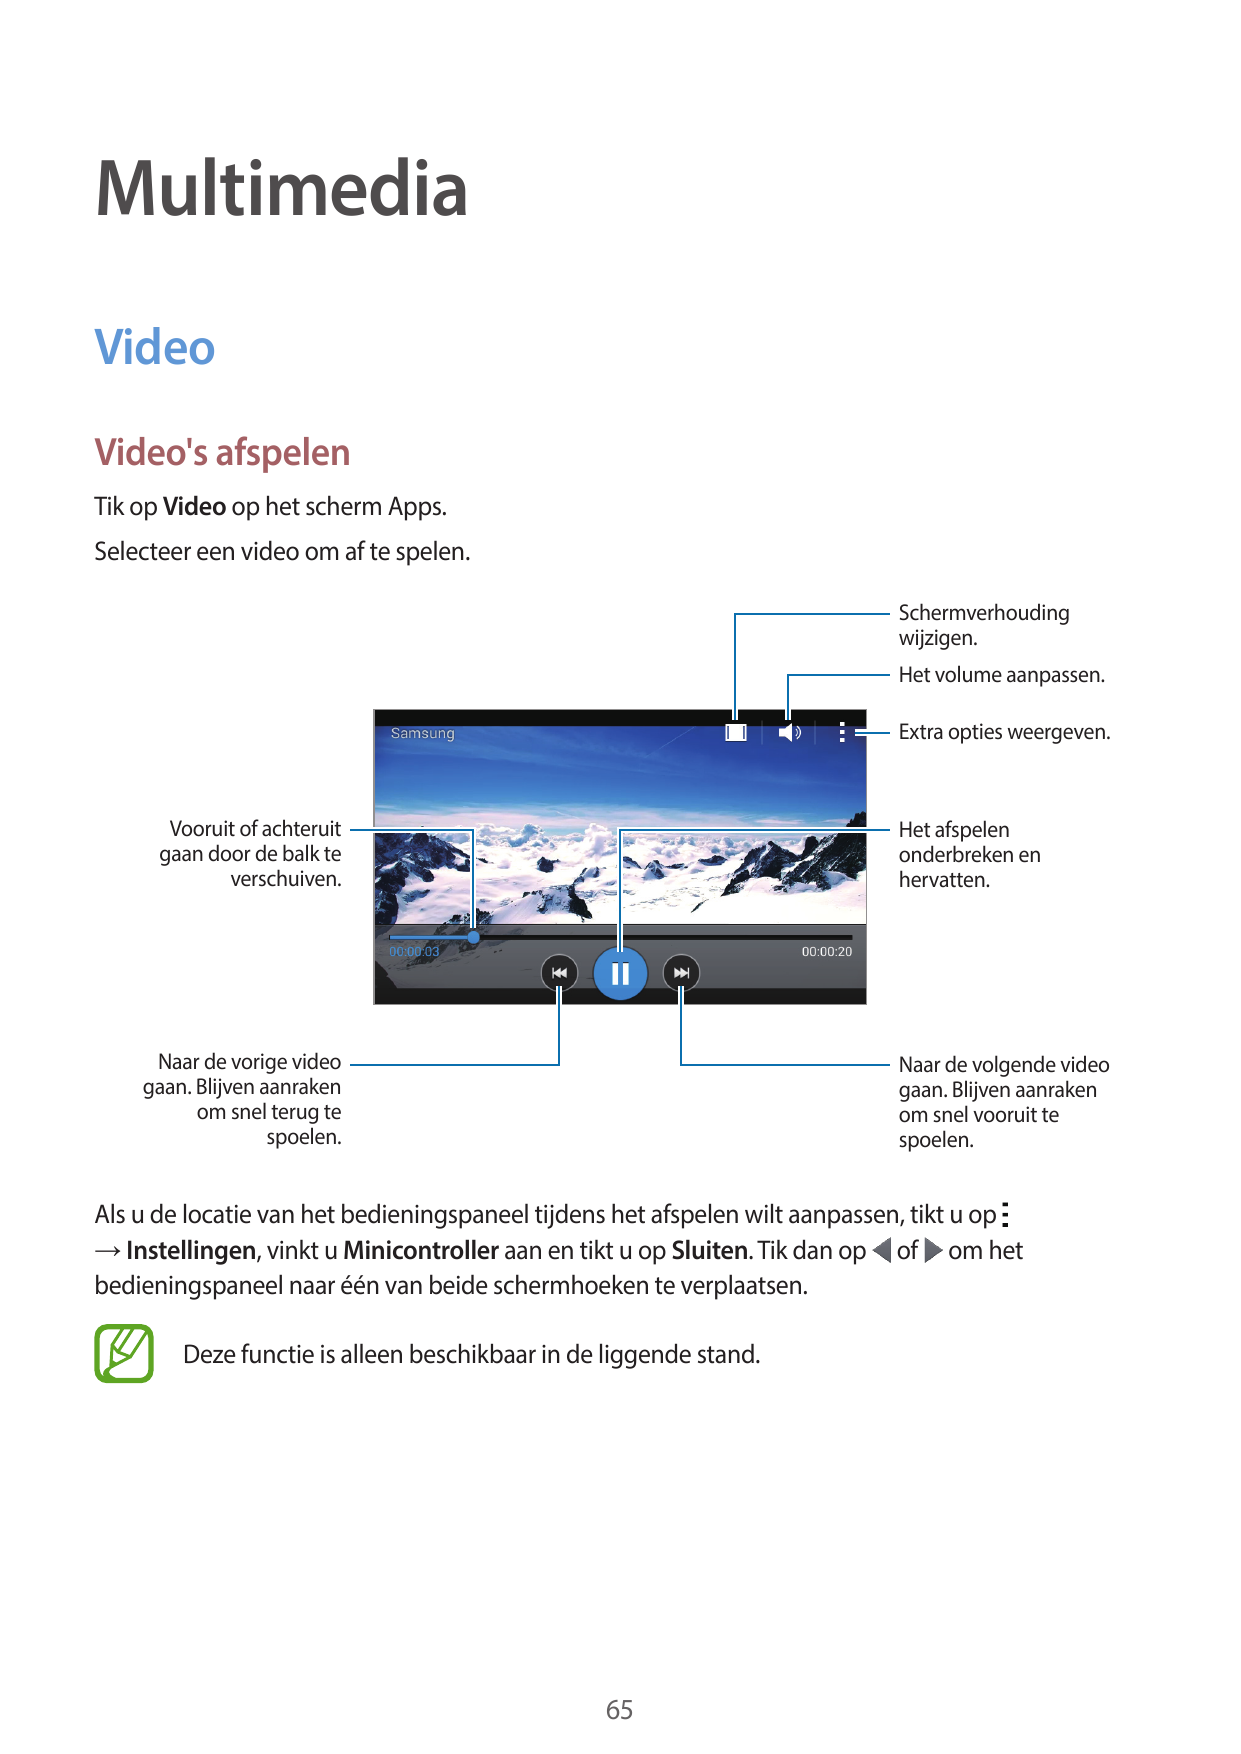 MultimediaVideoVideo's afspelenTik op Video op het scherm Apps.Selecteer een video om af te spelen.Schermverhoudingwijzigen.Het 